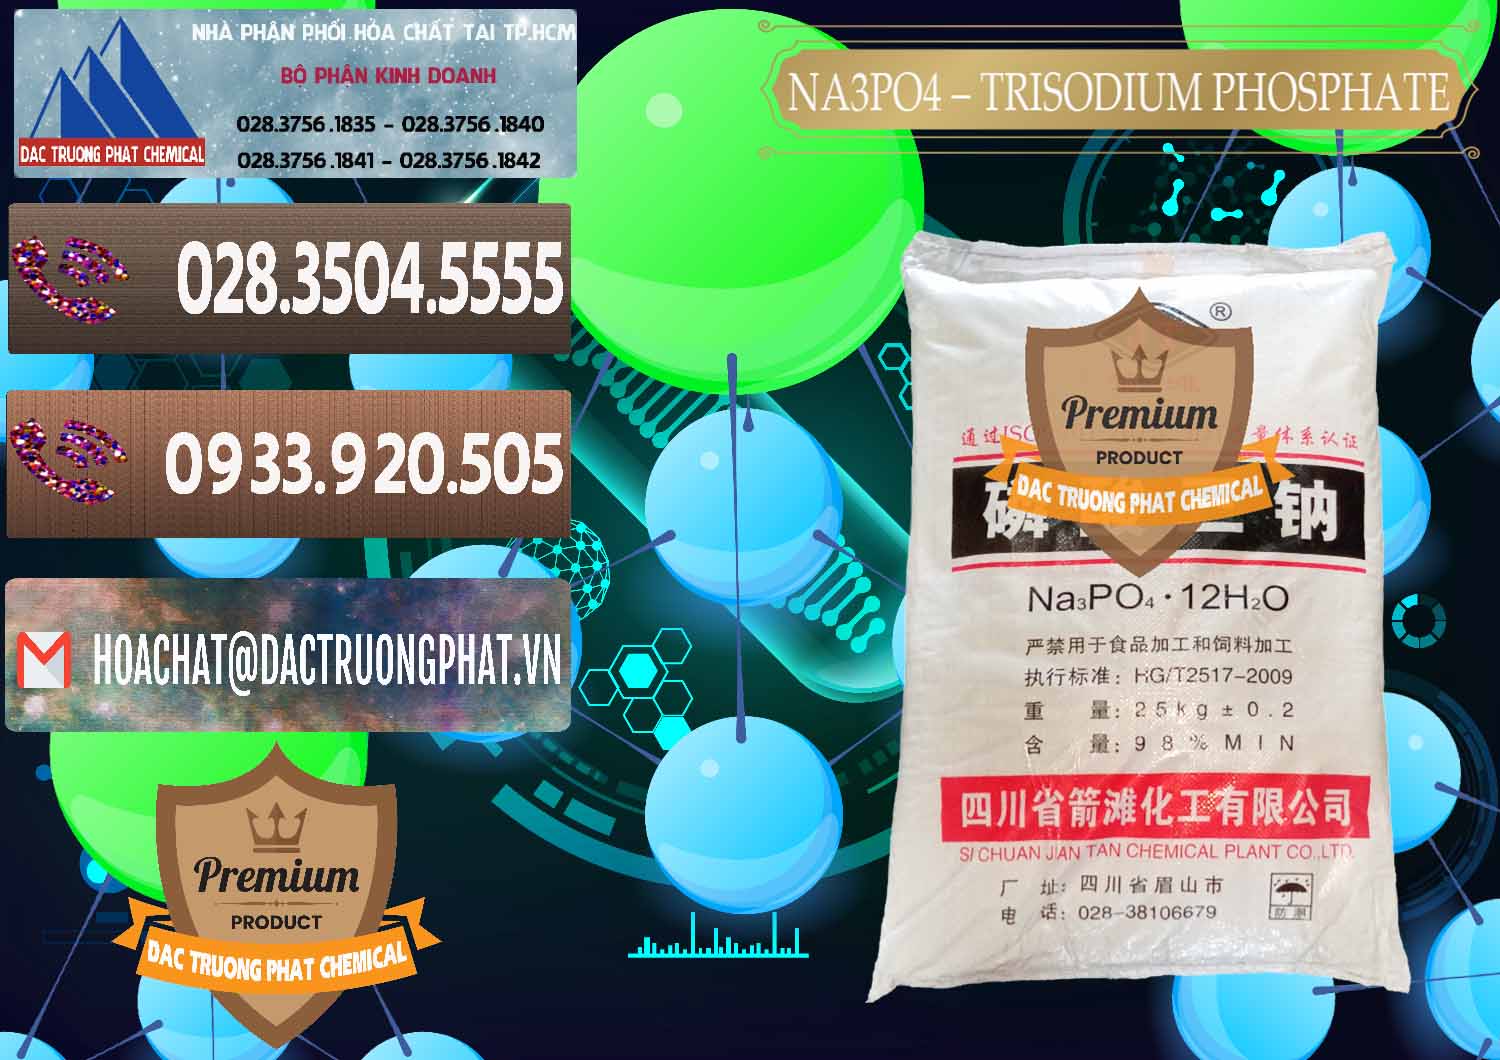 Cty kinh doanh và bán Na3PO4 – Trisodium Phosphate Trung Quốc China JT - 0102 - Công ty chuyên phân phối ( nhập khẩu ) hóa chất tại TP.HCM - hoachatviet.net